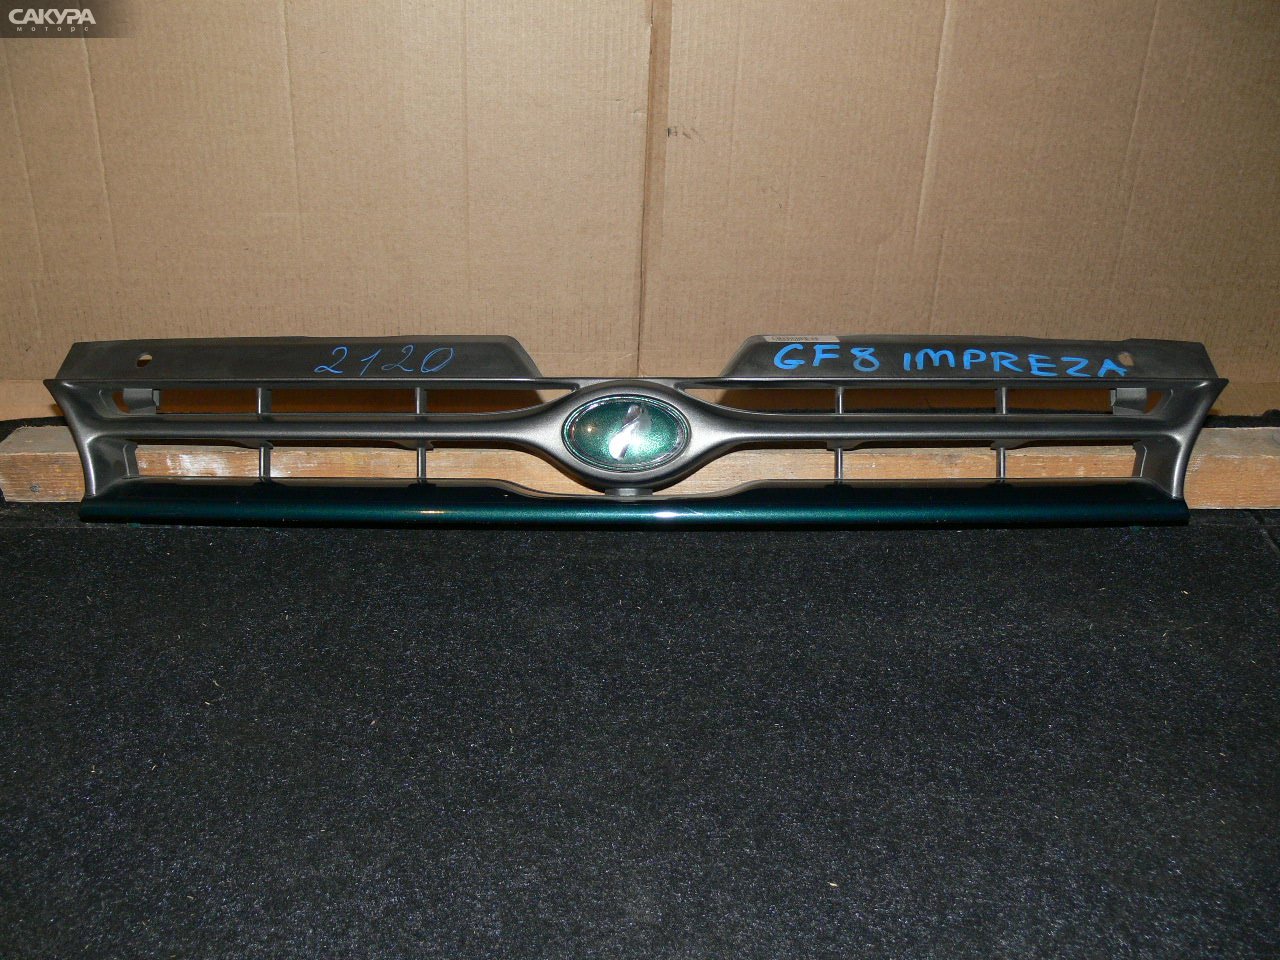 Решетка радиатора Subaru Impreza GF8: купить в Сакура Иркутск.